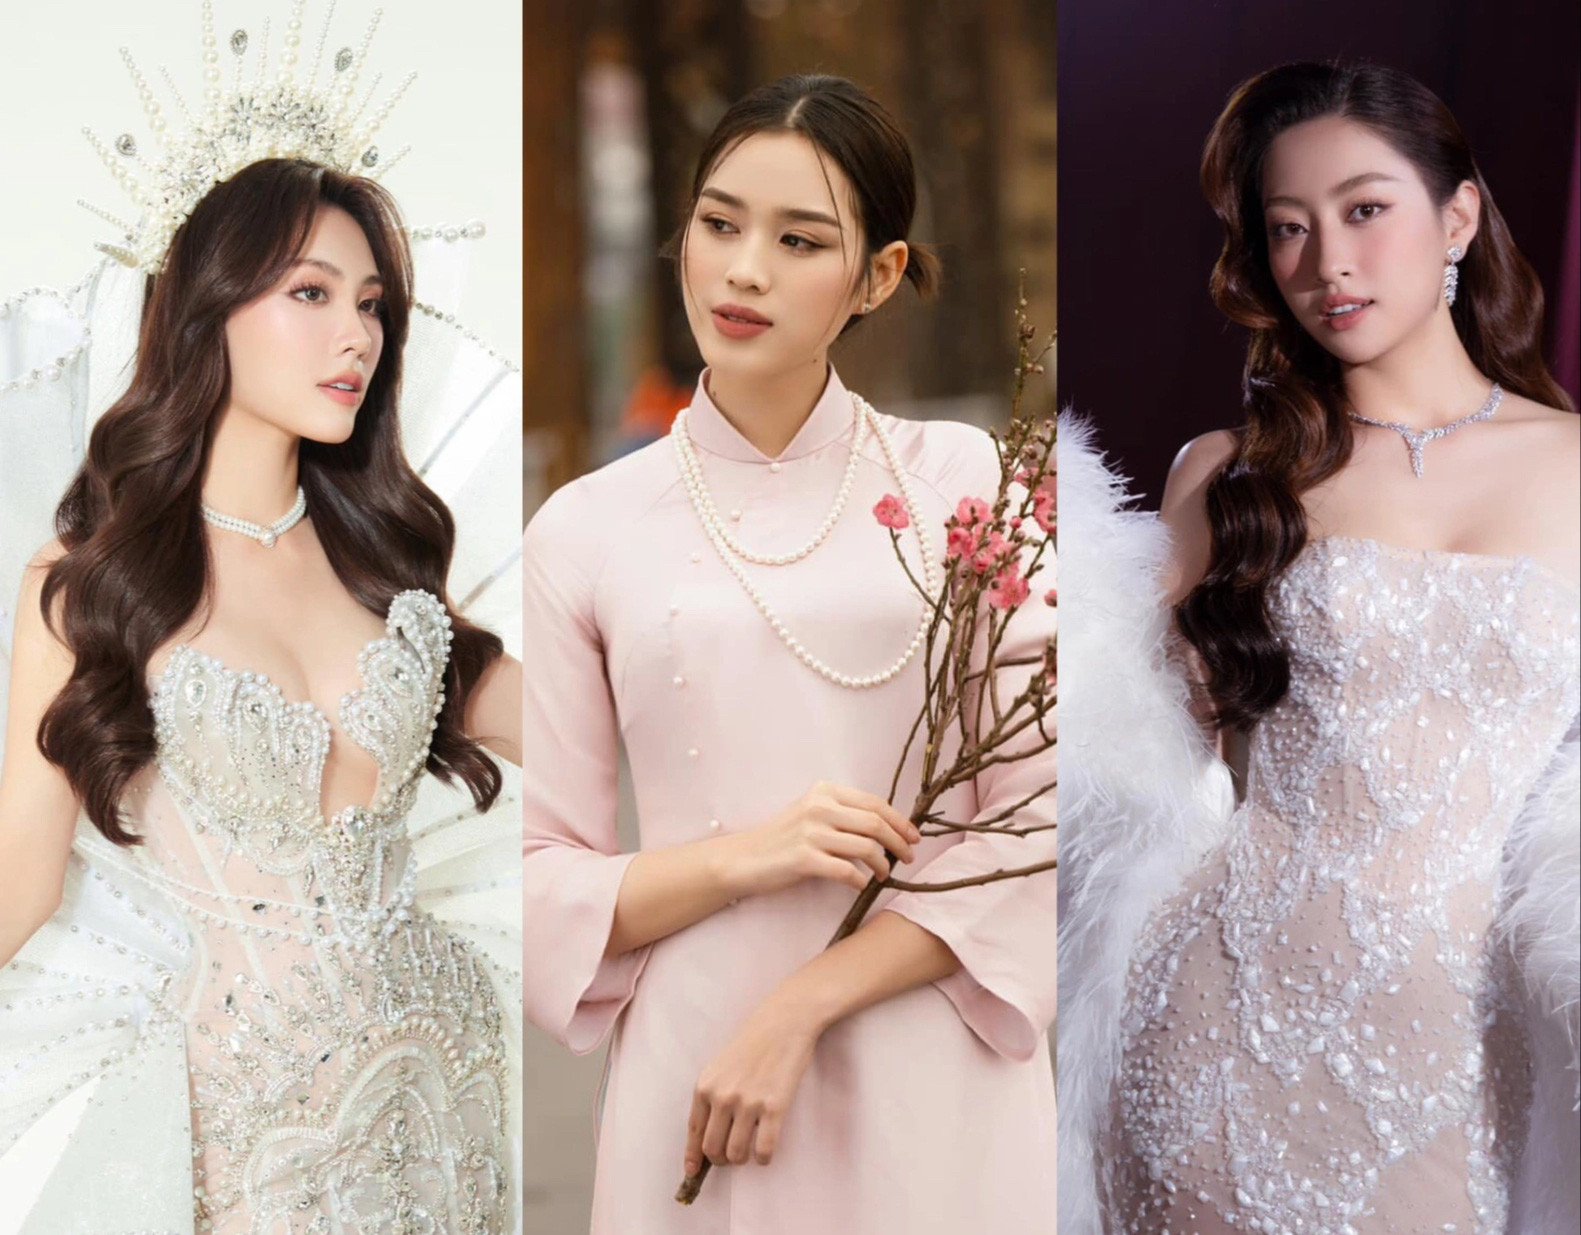 Từ trái qua: Mai Phương, Đỗ Thị Hà, Lương Thùy Linh - Ảnh: Facebook nhân vật